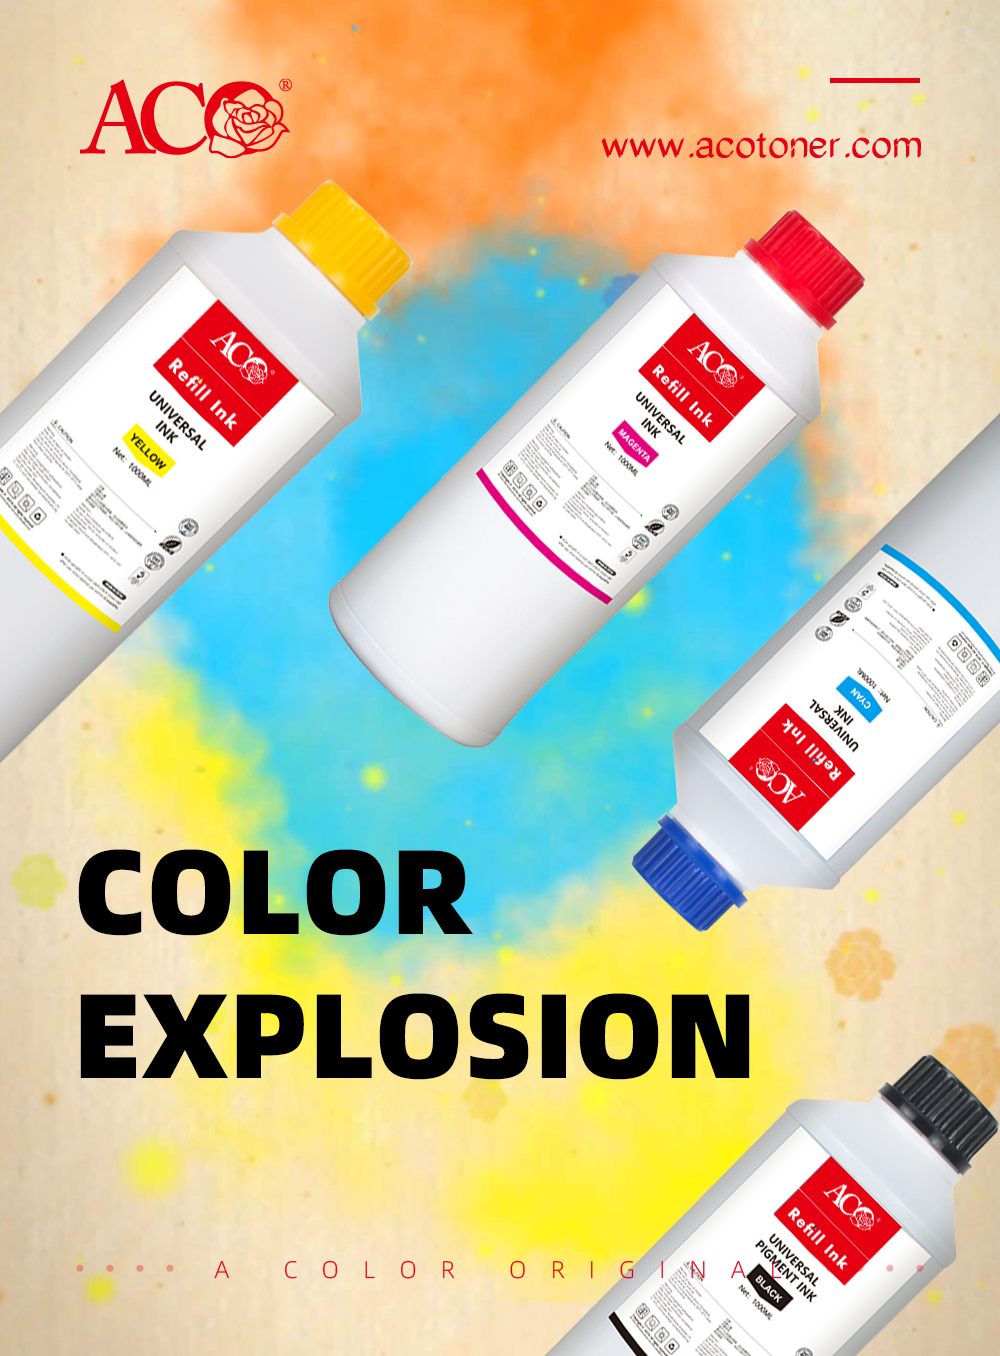 Download ACO Refill Ink Color Explosion - ACO